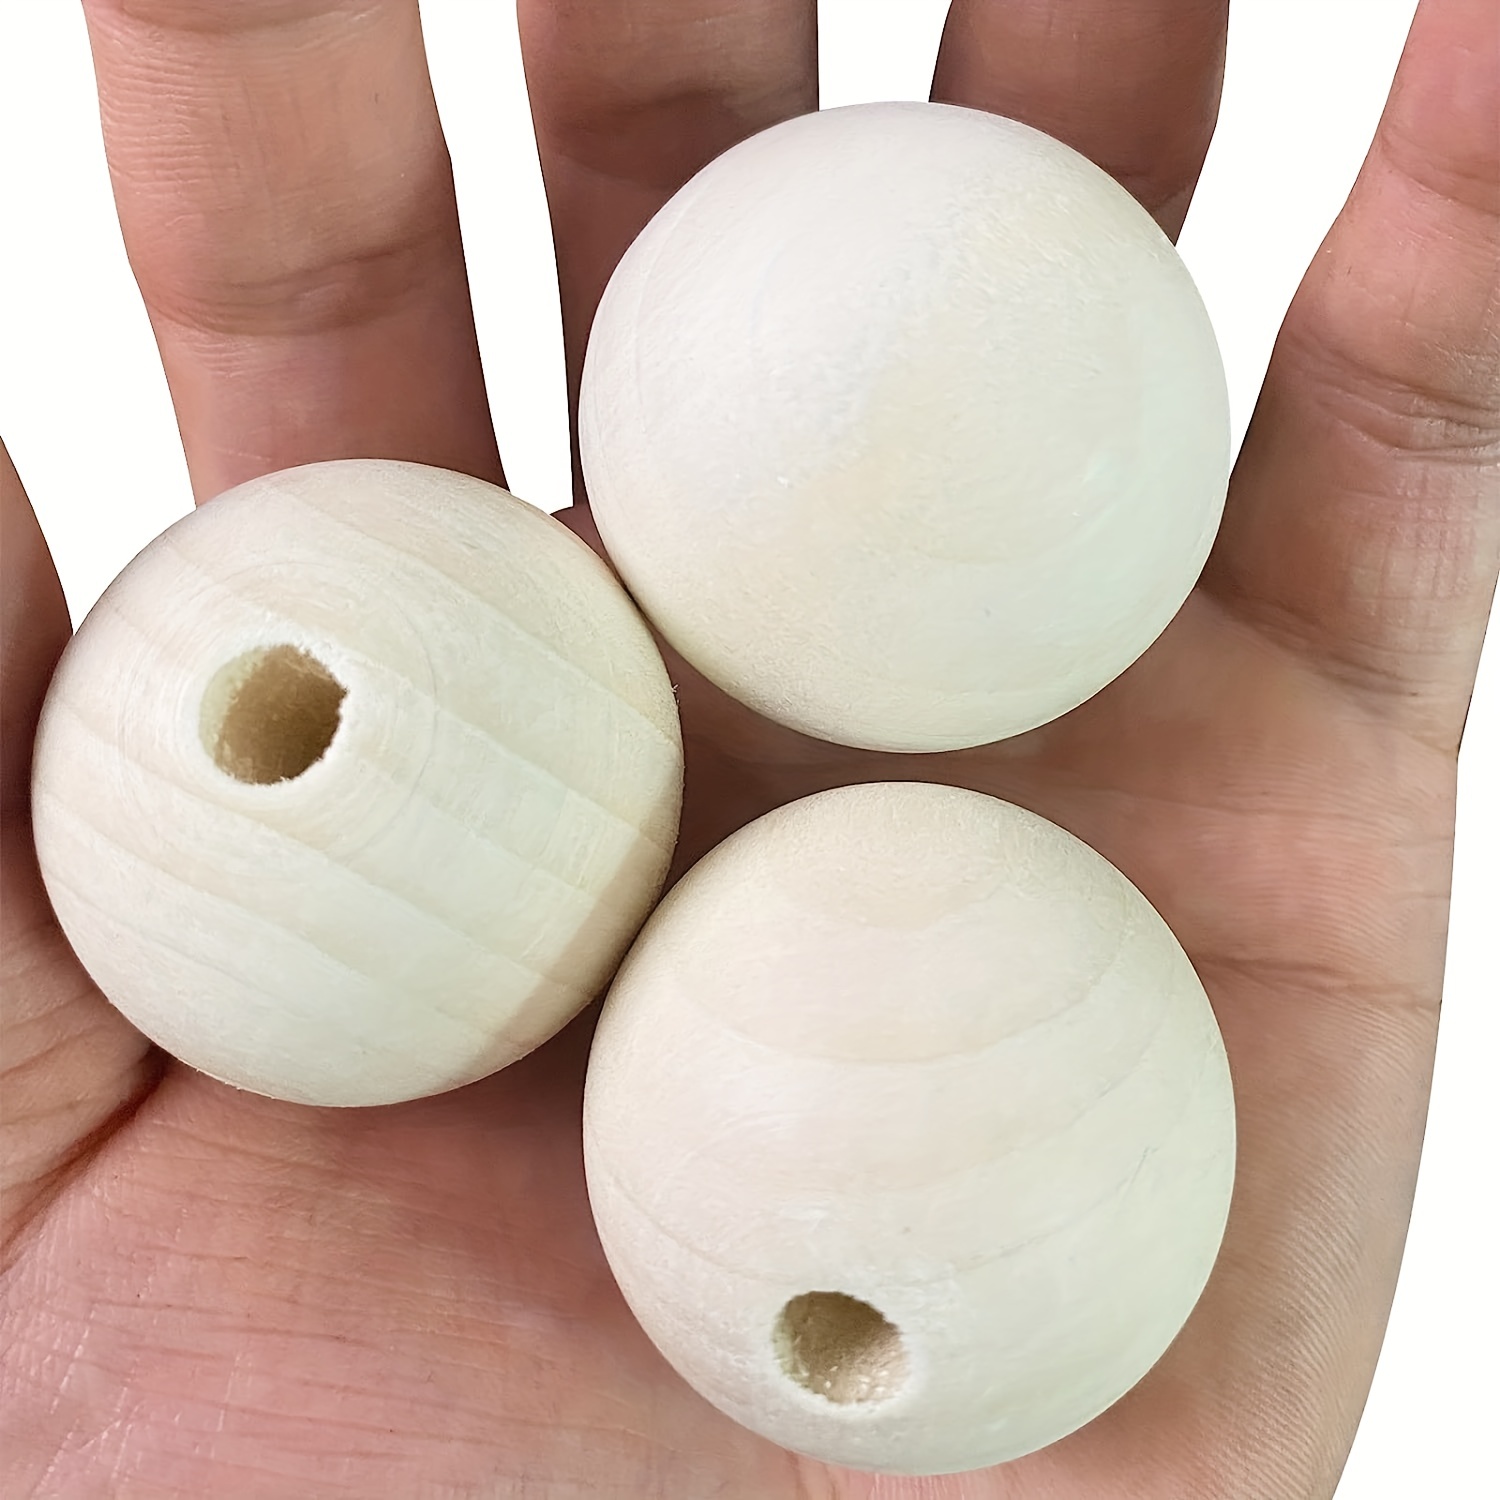 Wooden Balls Macrame Crafts, Wooden Balls Beads Accessories